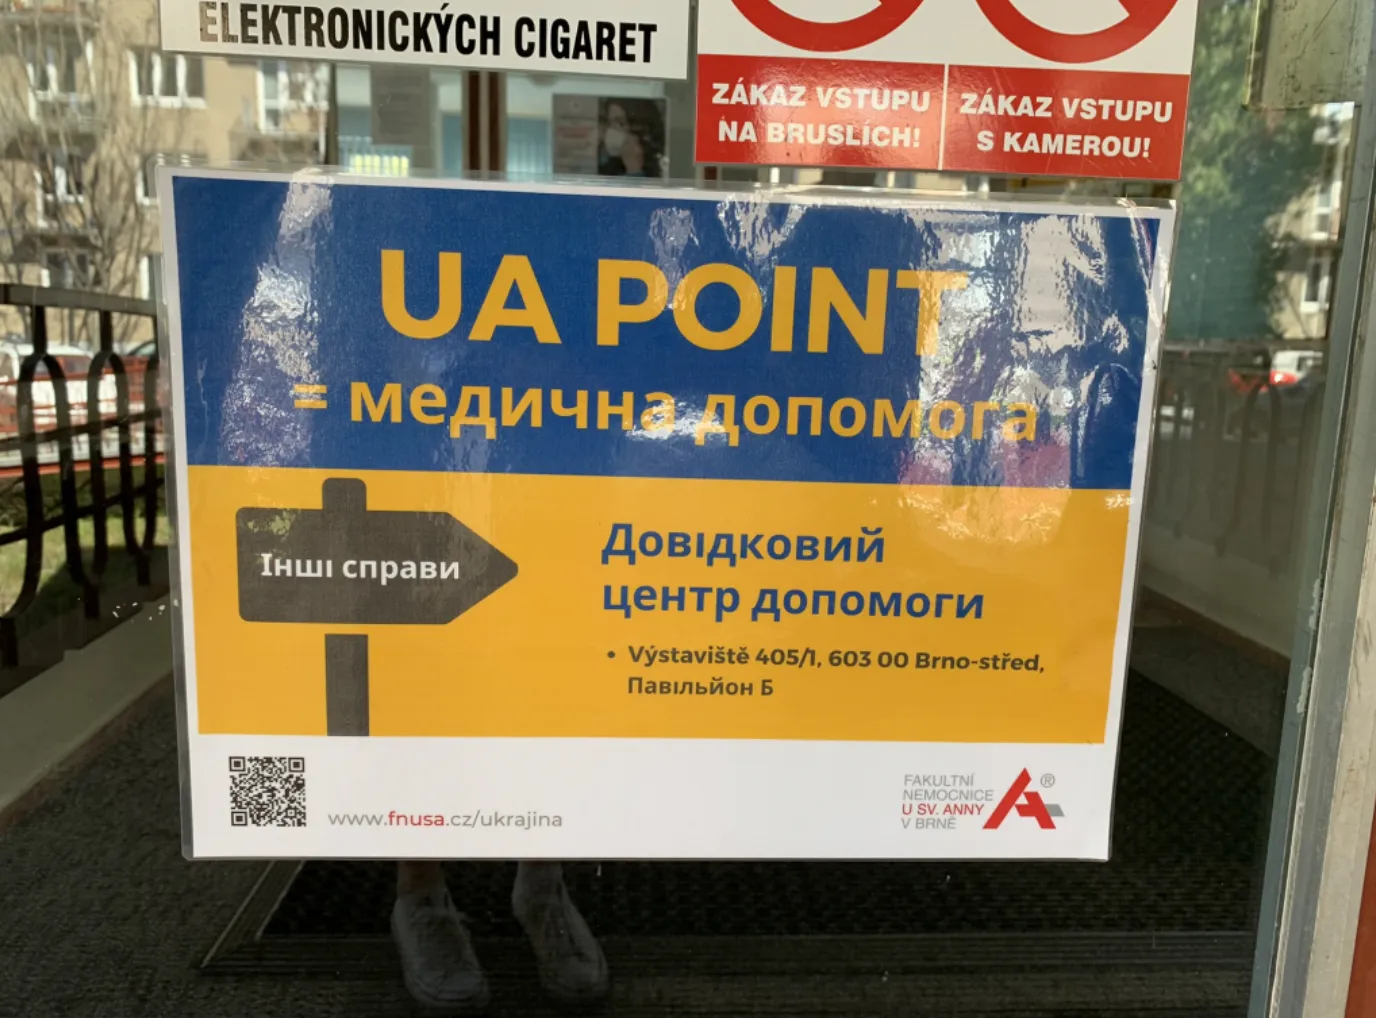 UA point у Брно